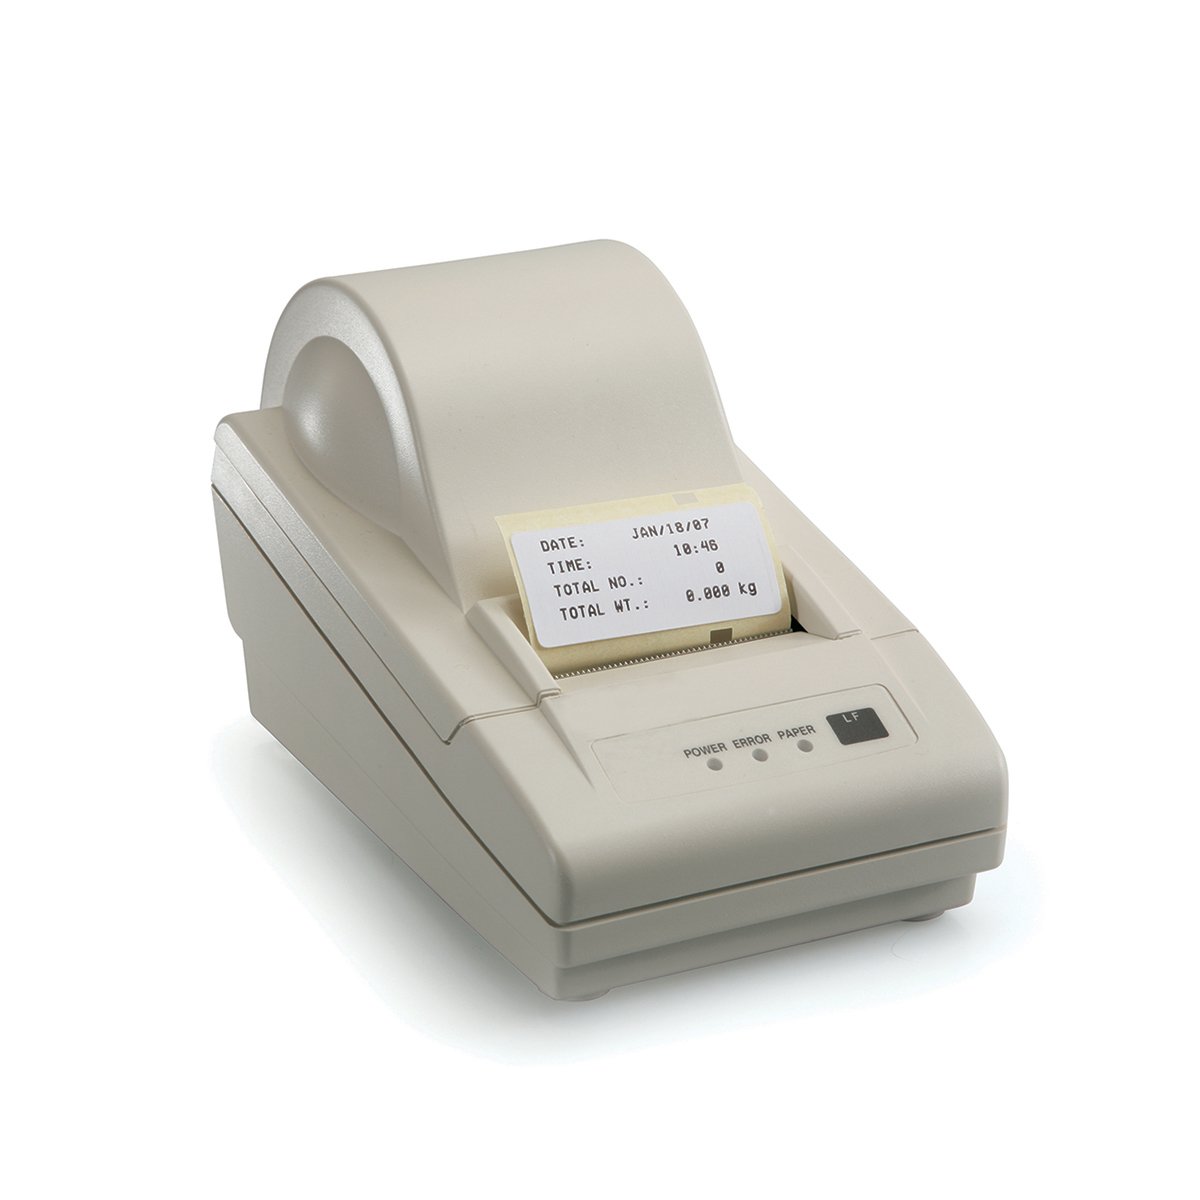 Impressora Térmica para balança - Bel TLP 50